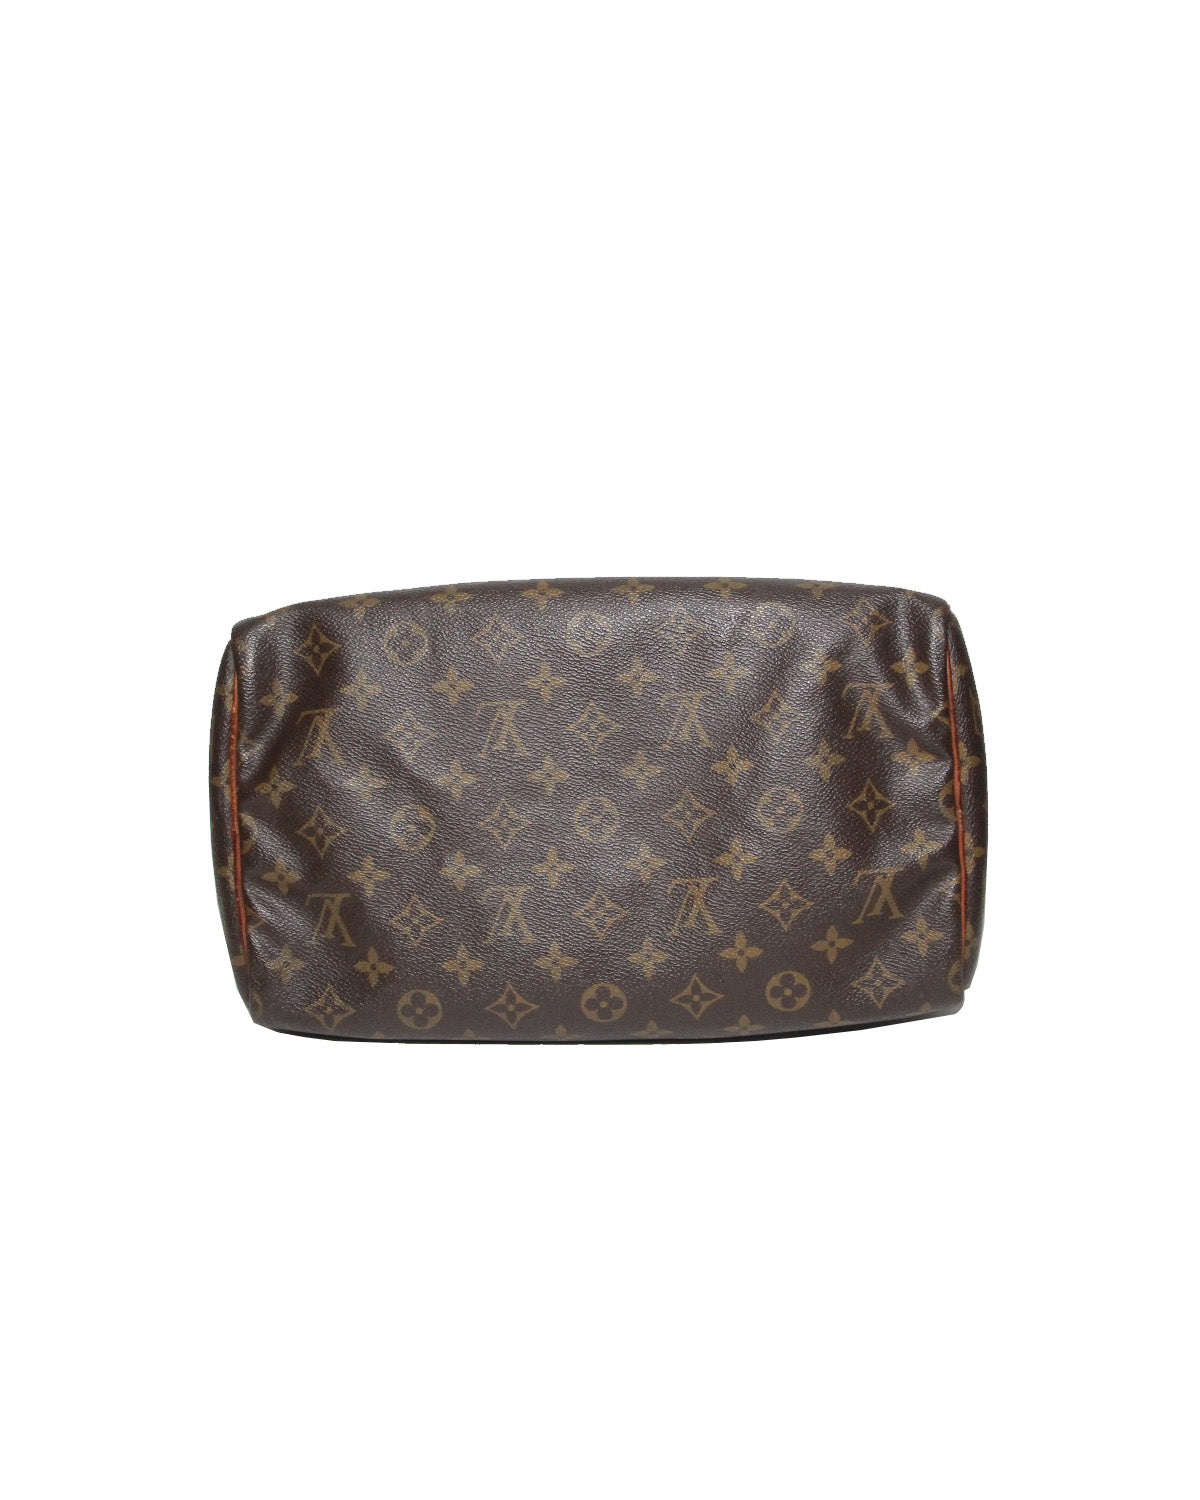 Louis Vuitton, Bags, Vintage Speedy Louis Vuitton Handbag For Sale